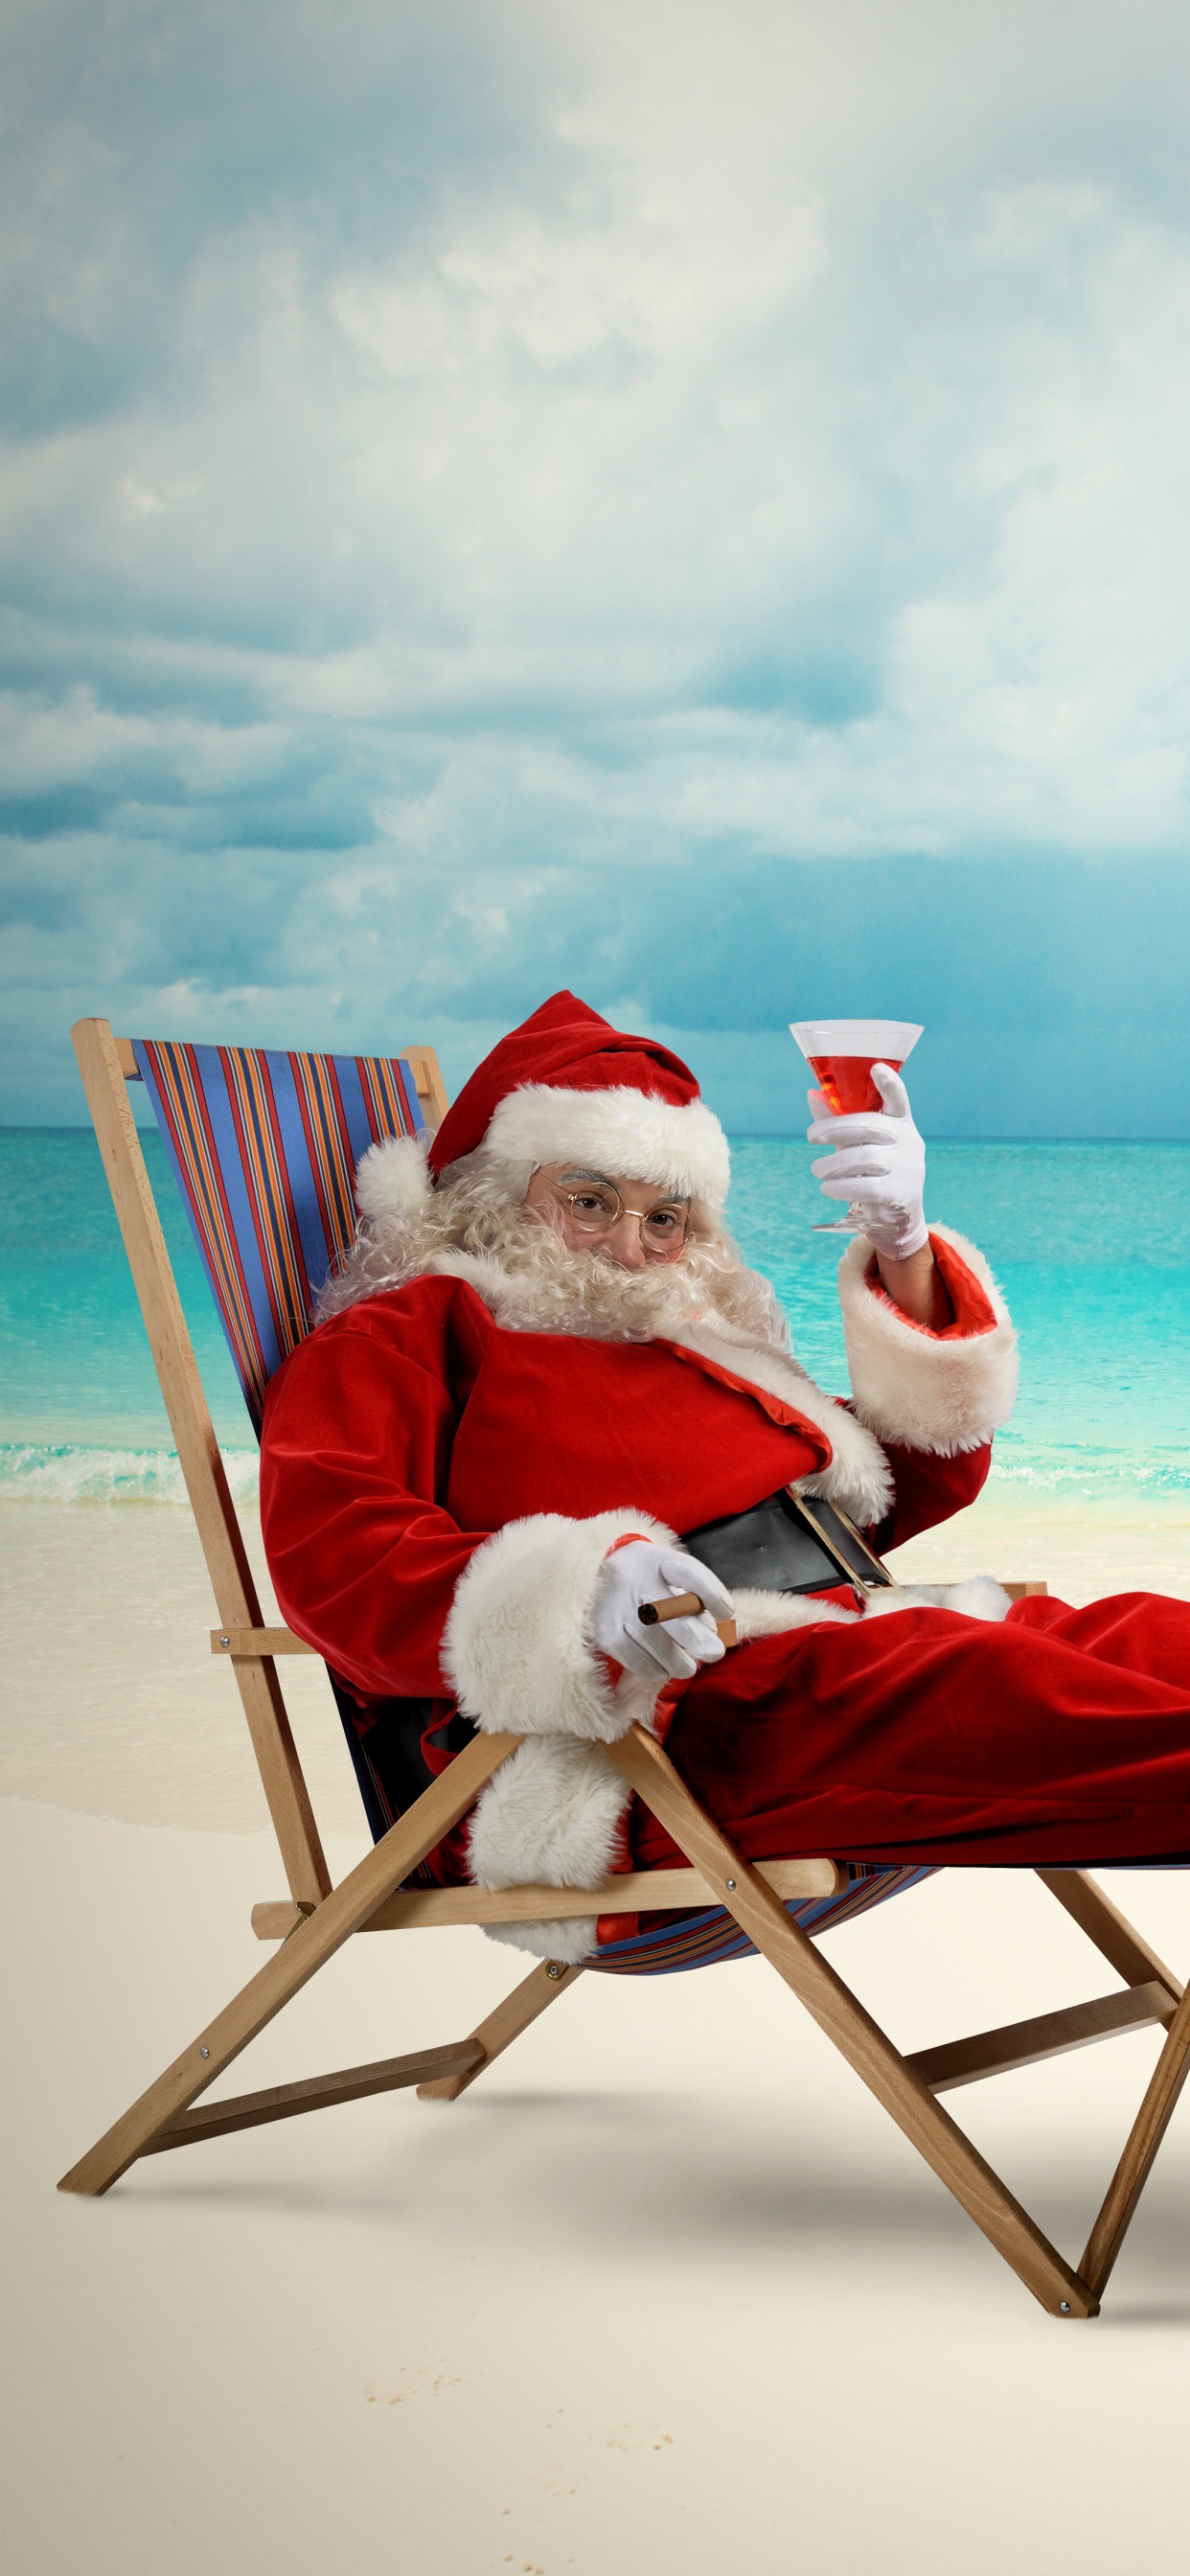 圣诞老人, 圣诞节那天, 大海, 度假, 海洋 壁纸 1242x2688 允许